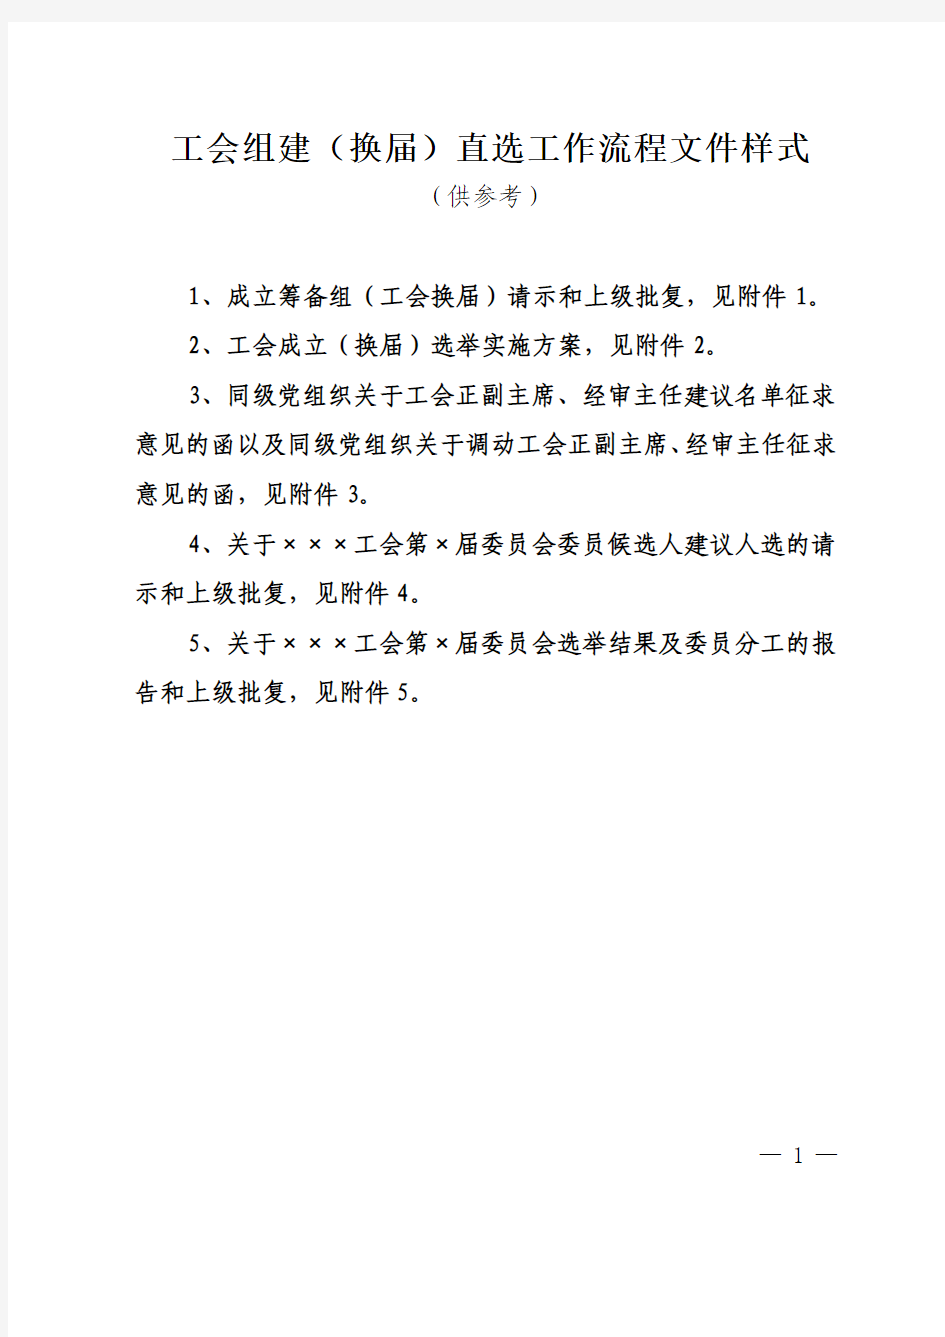 杨浦区工会组建(换届)直接选举工作流程文件样式(供参考)